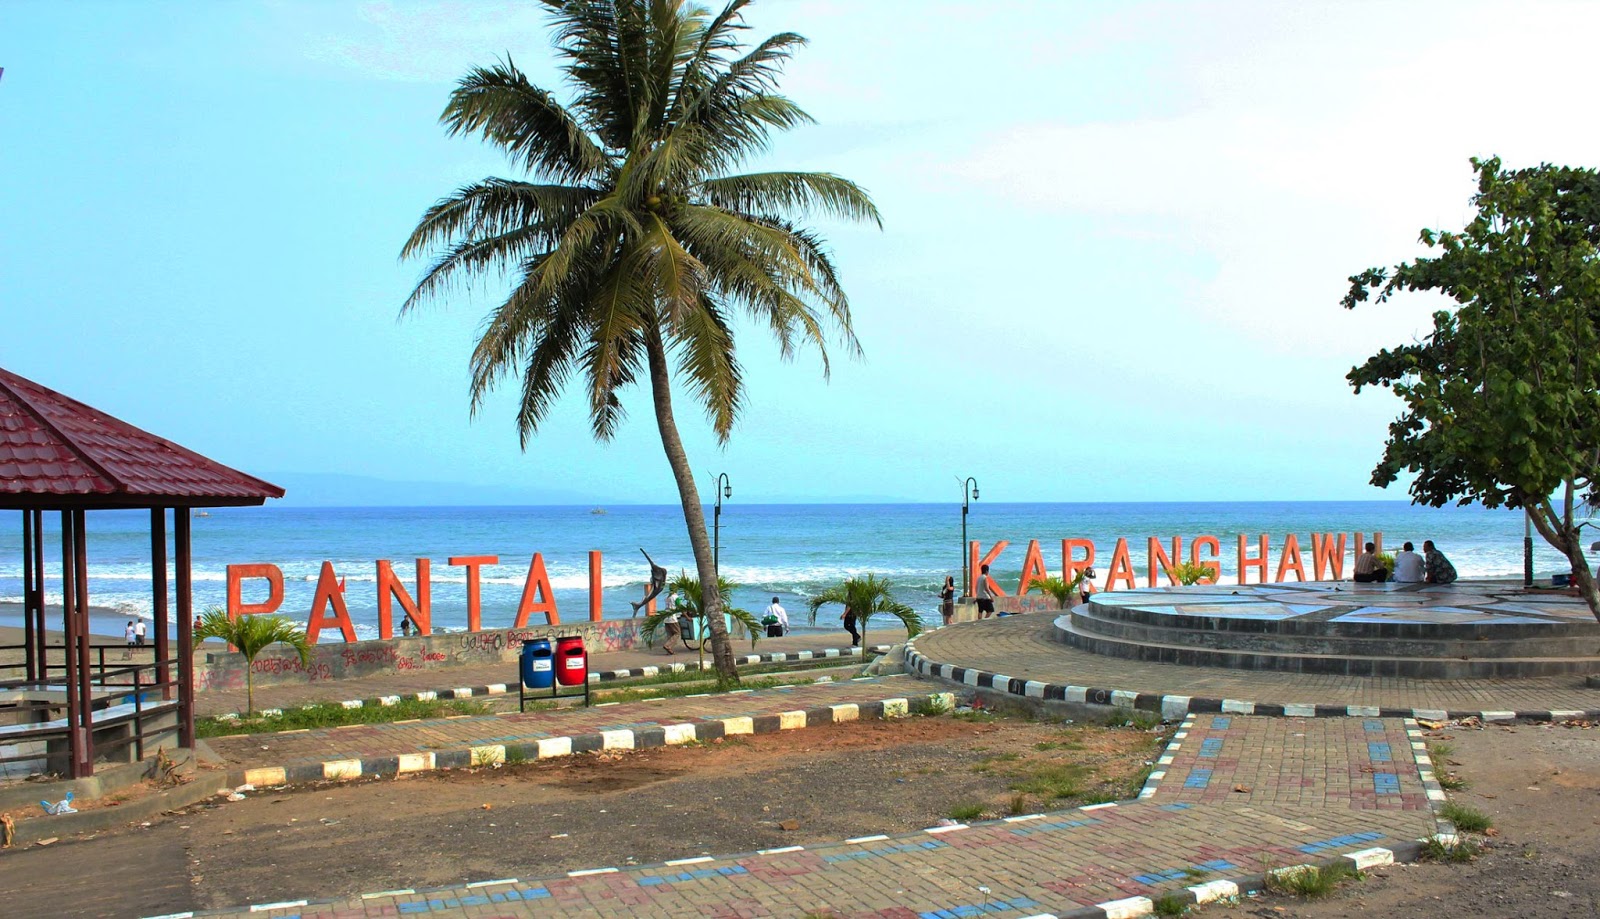 Wisata Pantai Kejawanan Kota Cirebon Jawa Barat